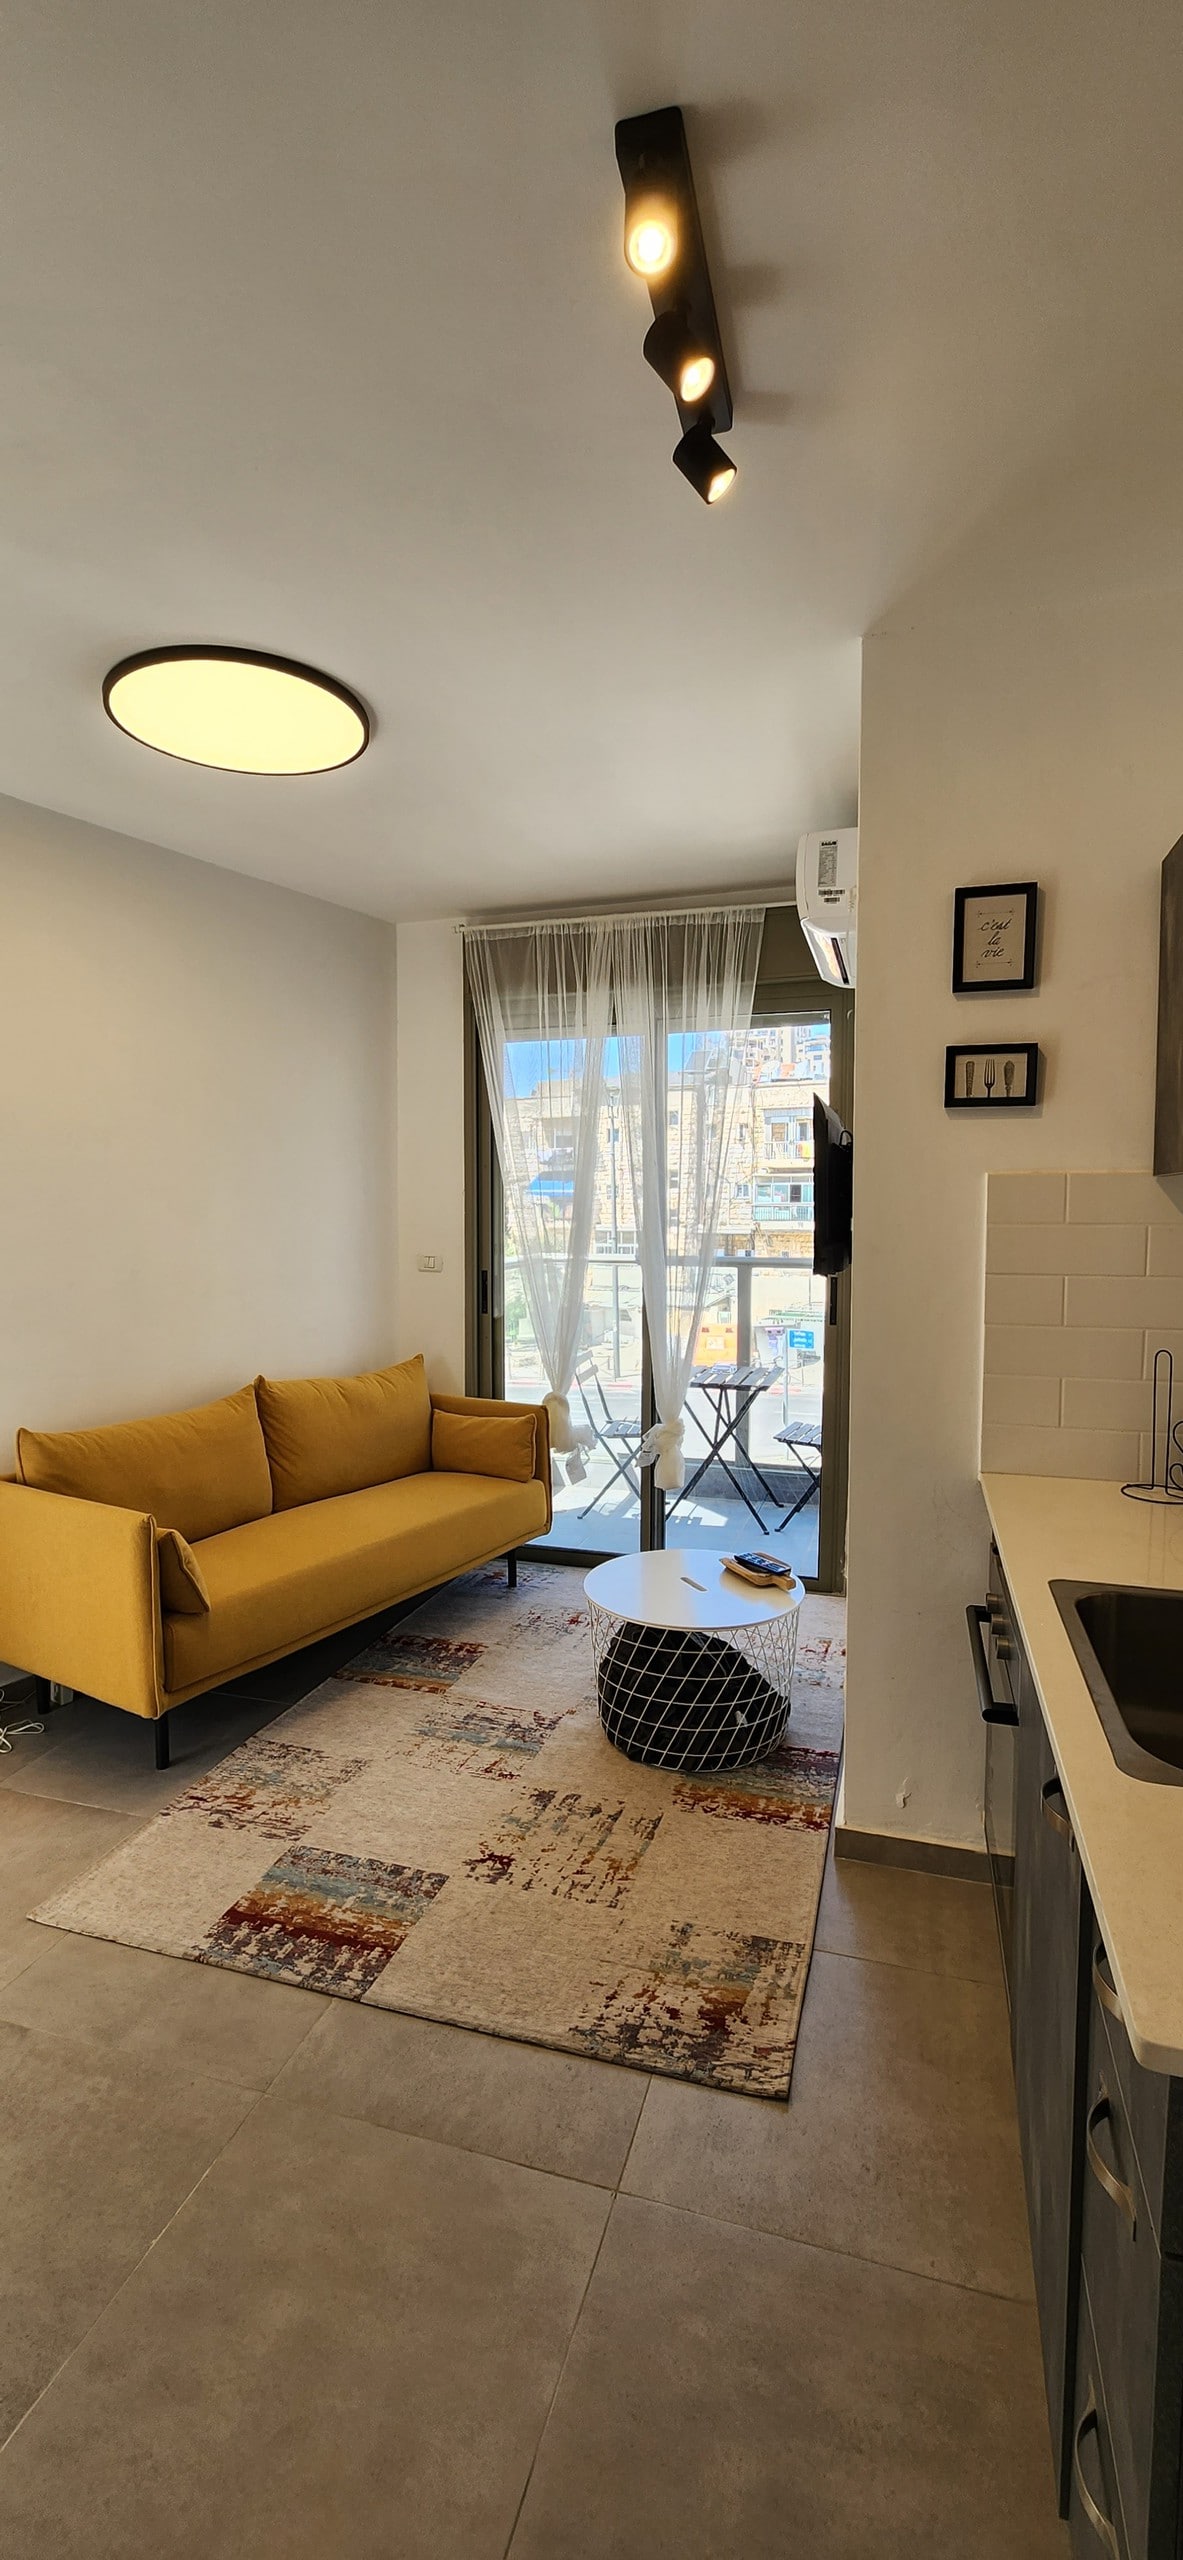 דירת נופש חלומית עם מקלט ממוגן במרכז ירושלים